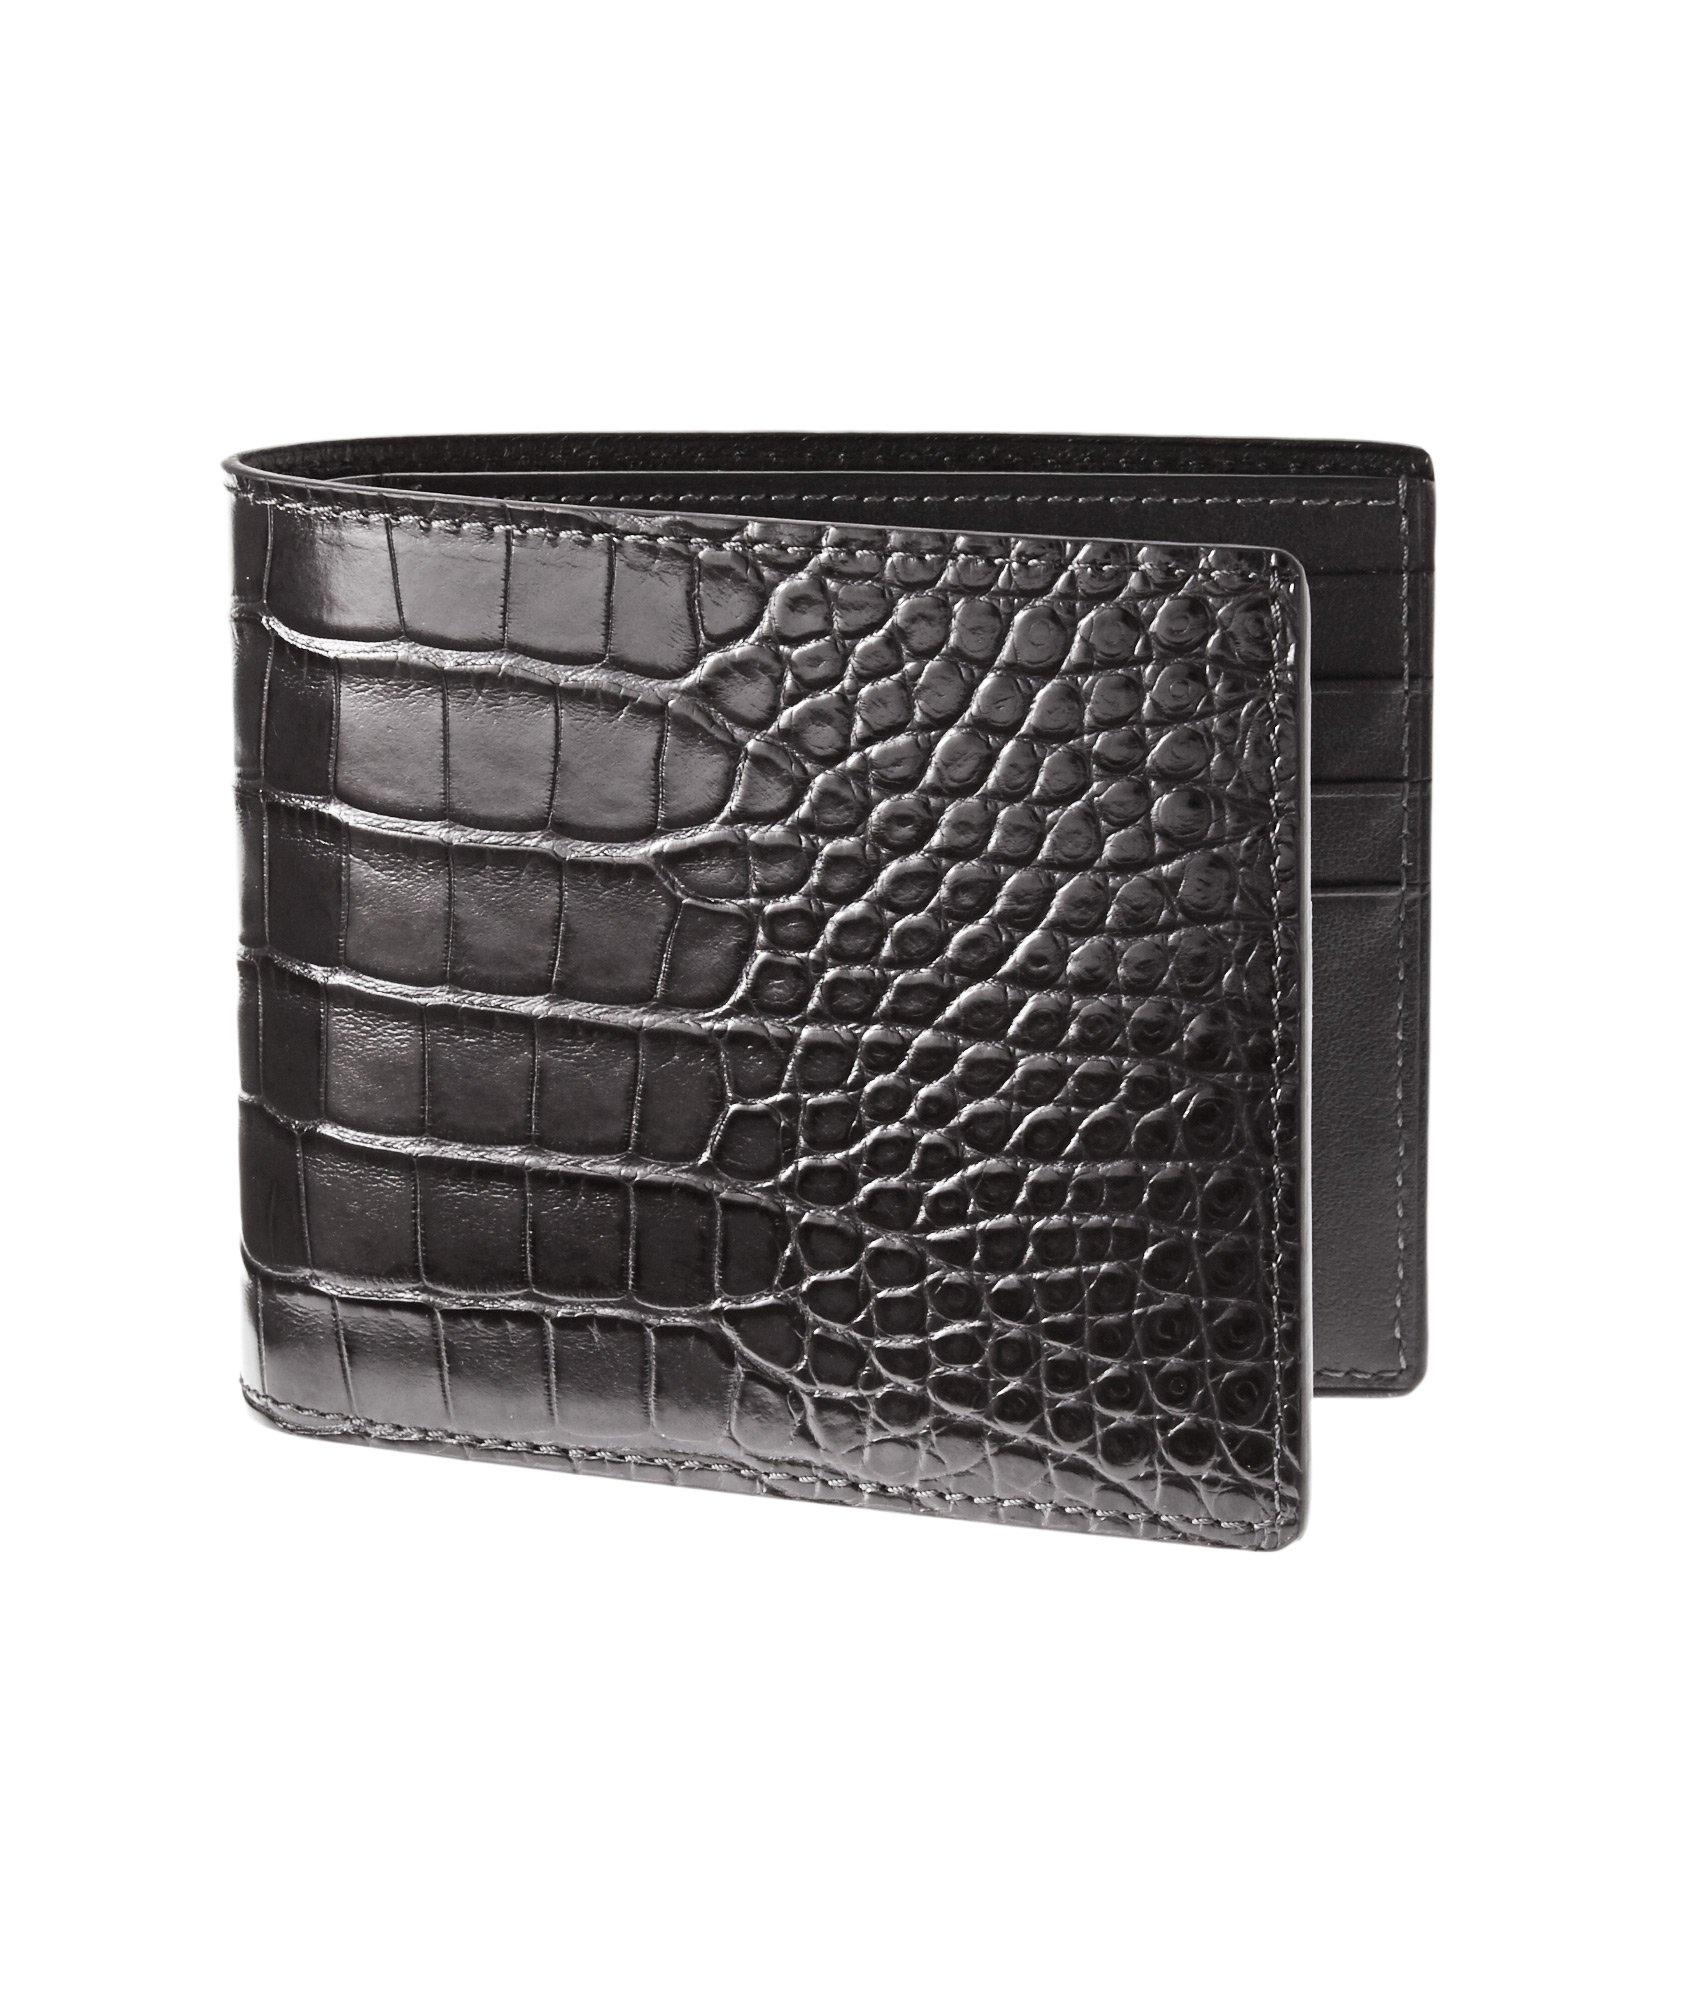 TOM FORD Alligator Leather Wallet | Wallets | Harry Rosen